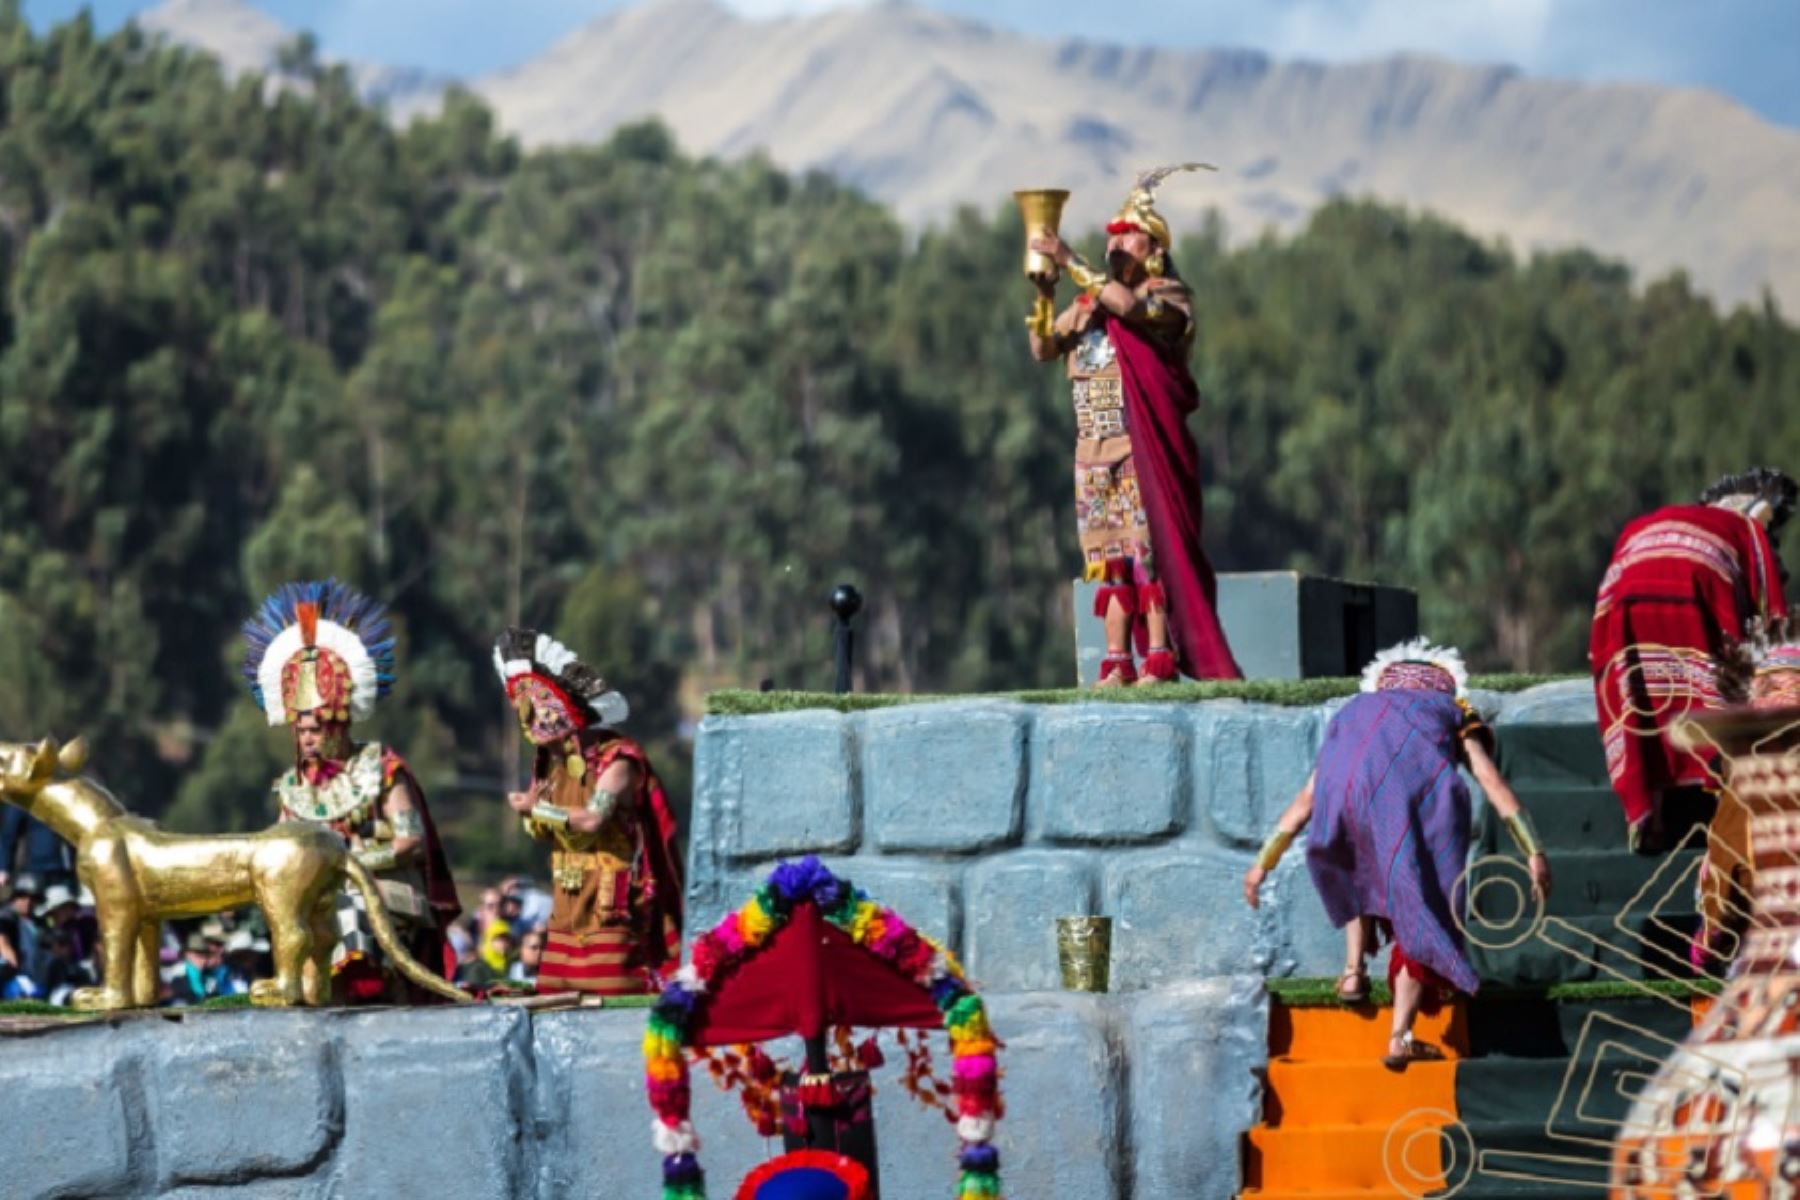 La región Cusco se apresta a celebrar en junio su mes jubilar. Serán 30 días de actividades oficiales plenas de profundo significado cultural, coronadas por las festividades más solemnes y majestuosas del año como el Inti Raymi, el Corpus Christi y el Señor de Qoyllur Riti.